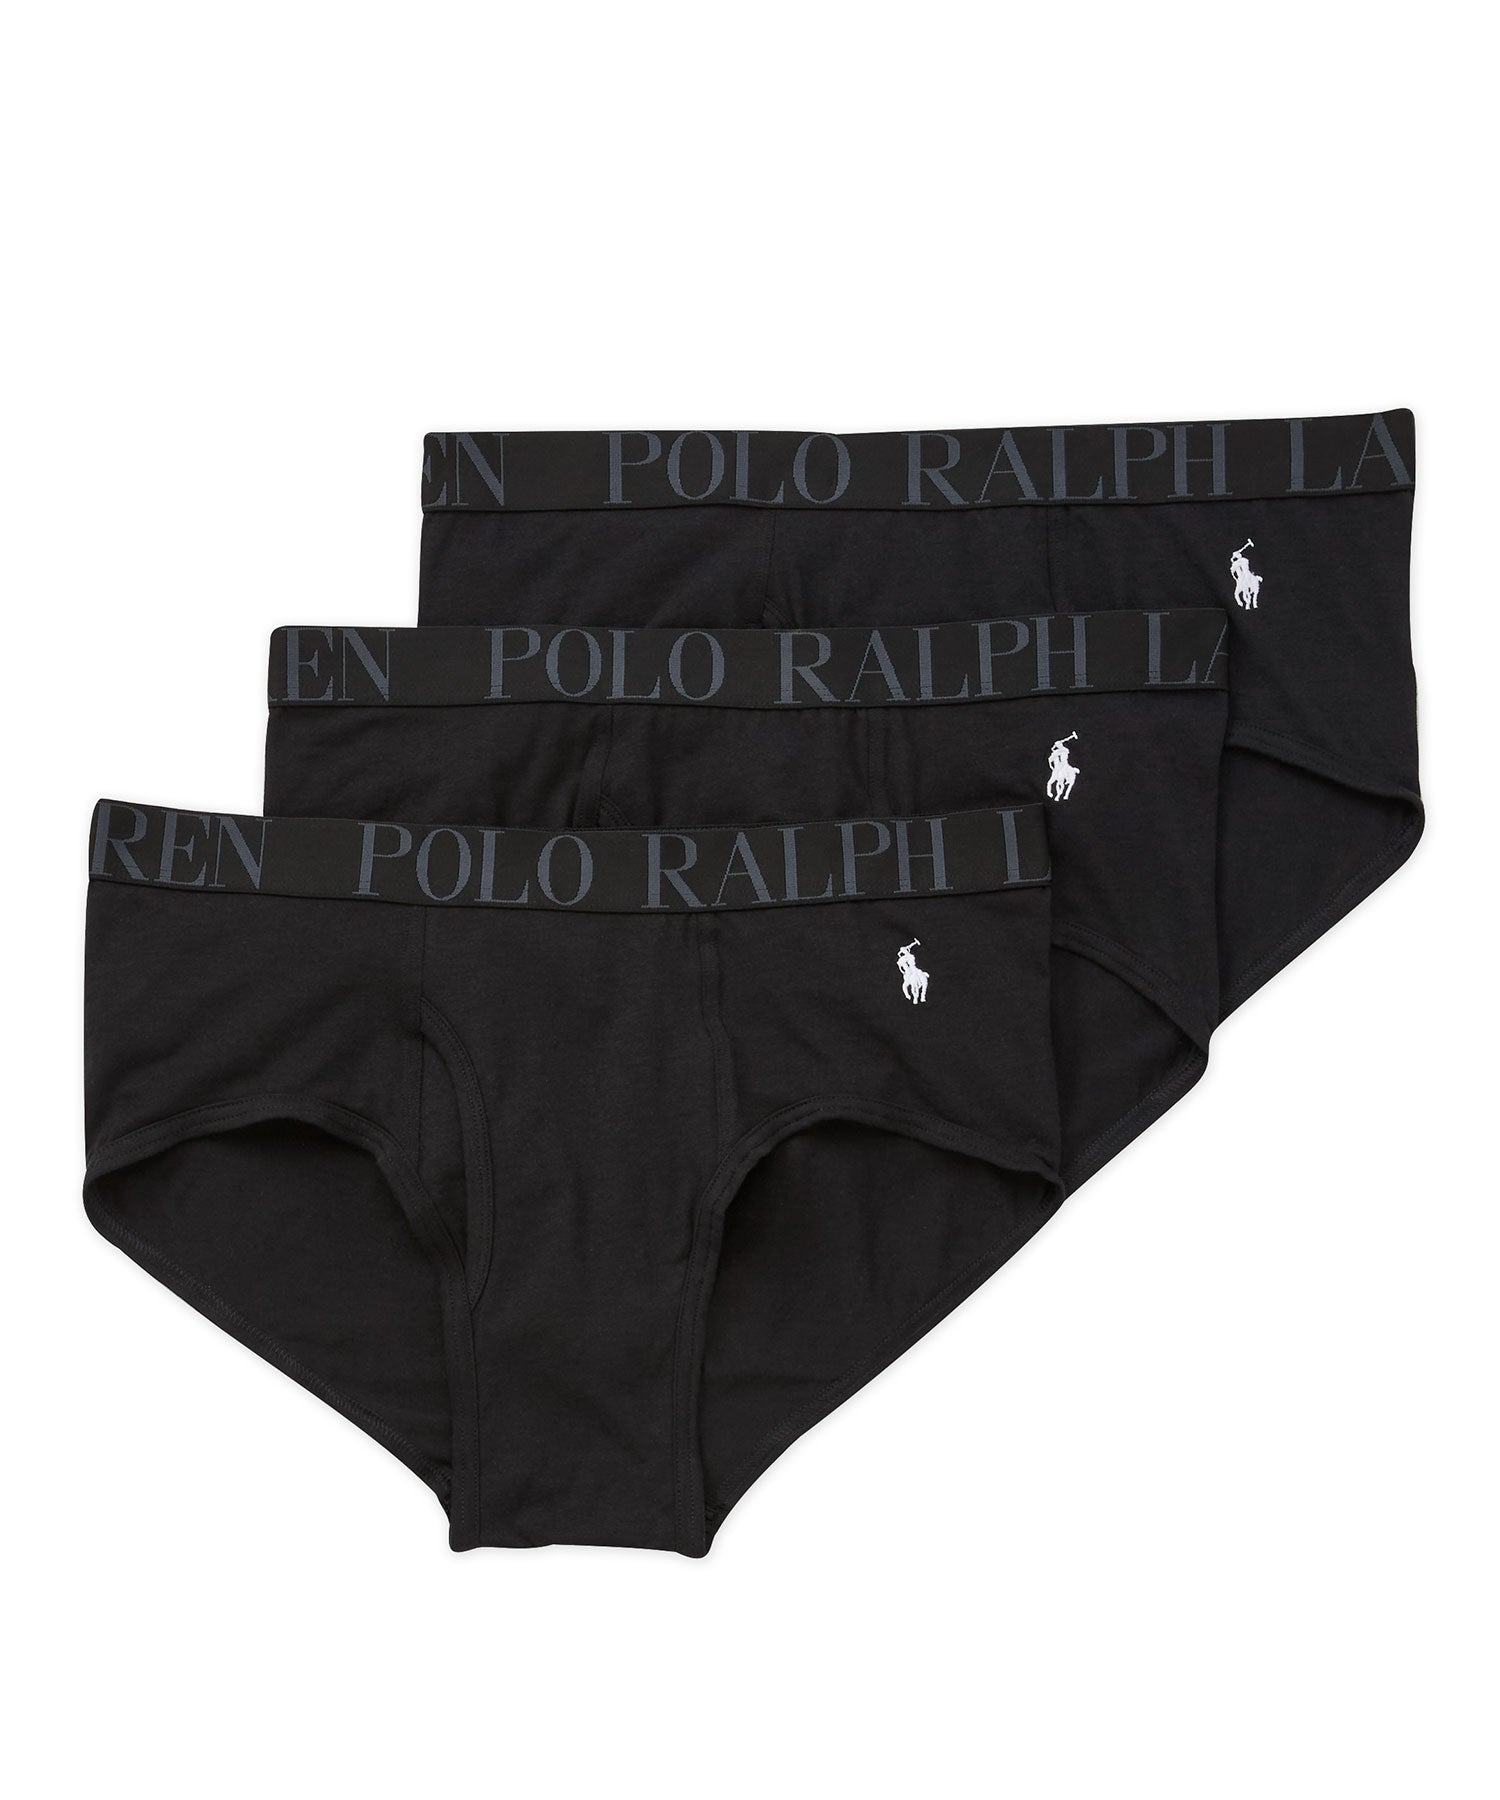 Polo Ralph Lauren Classic Briefs (3-Pack), Men's Big & Tall